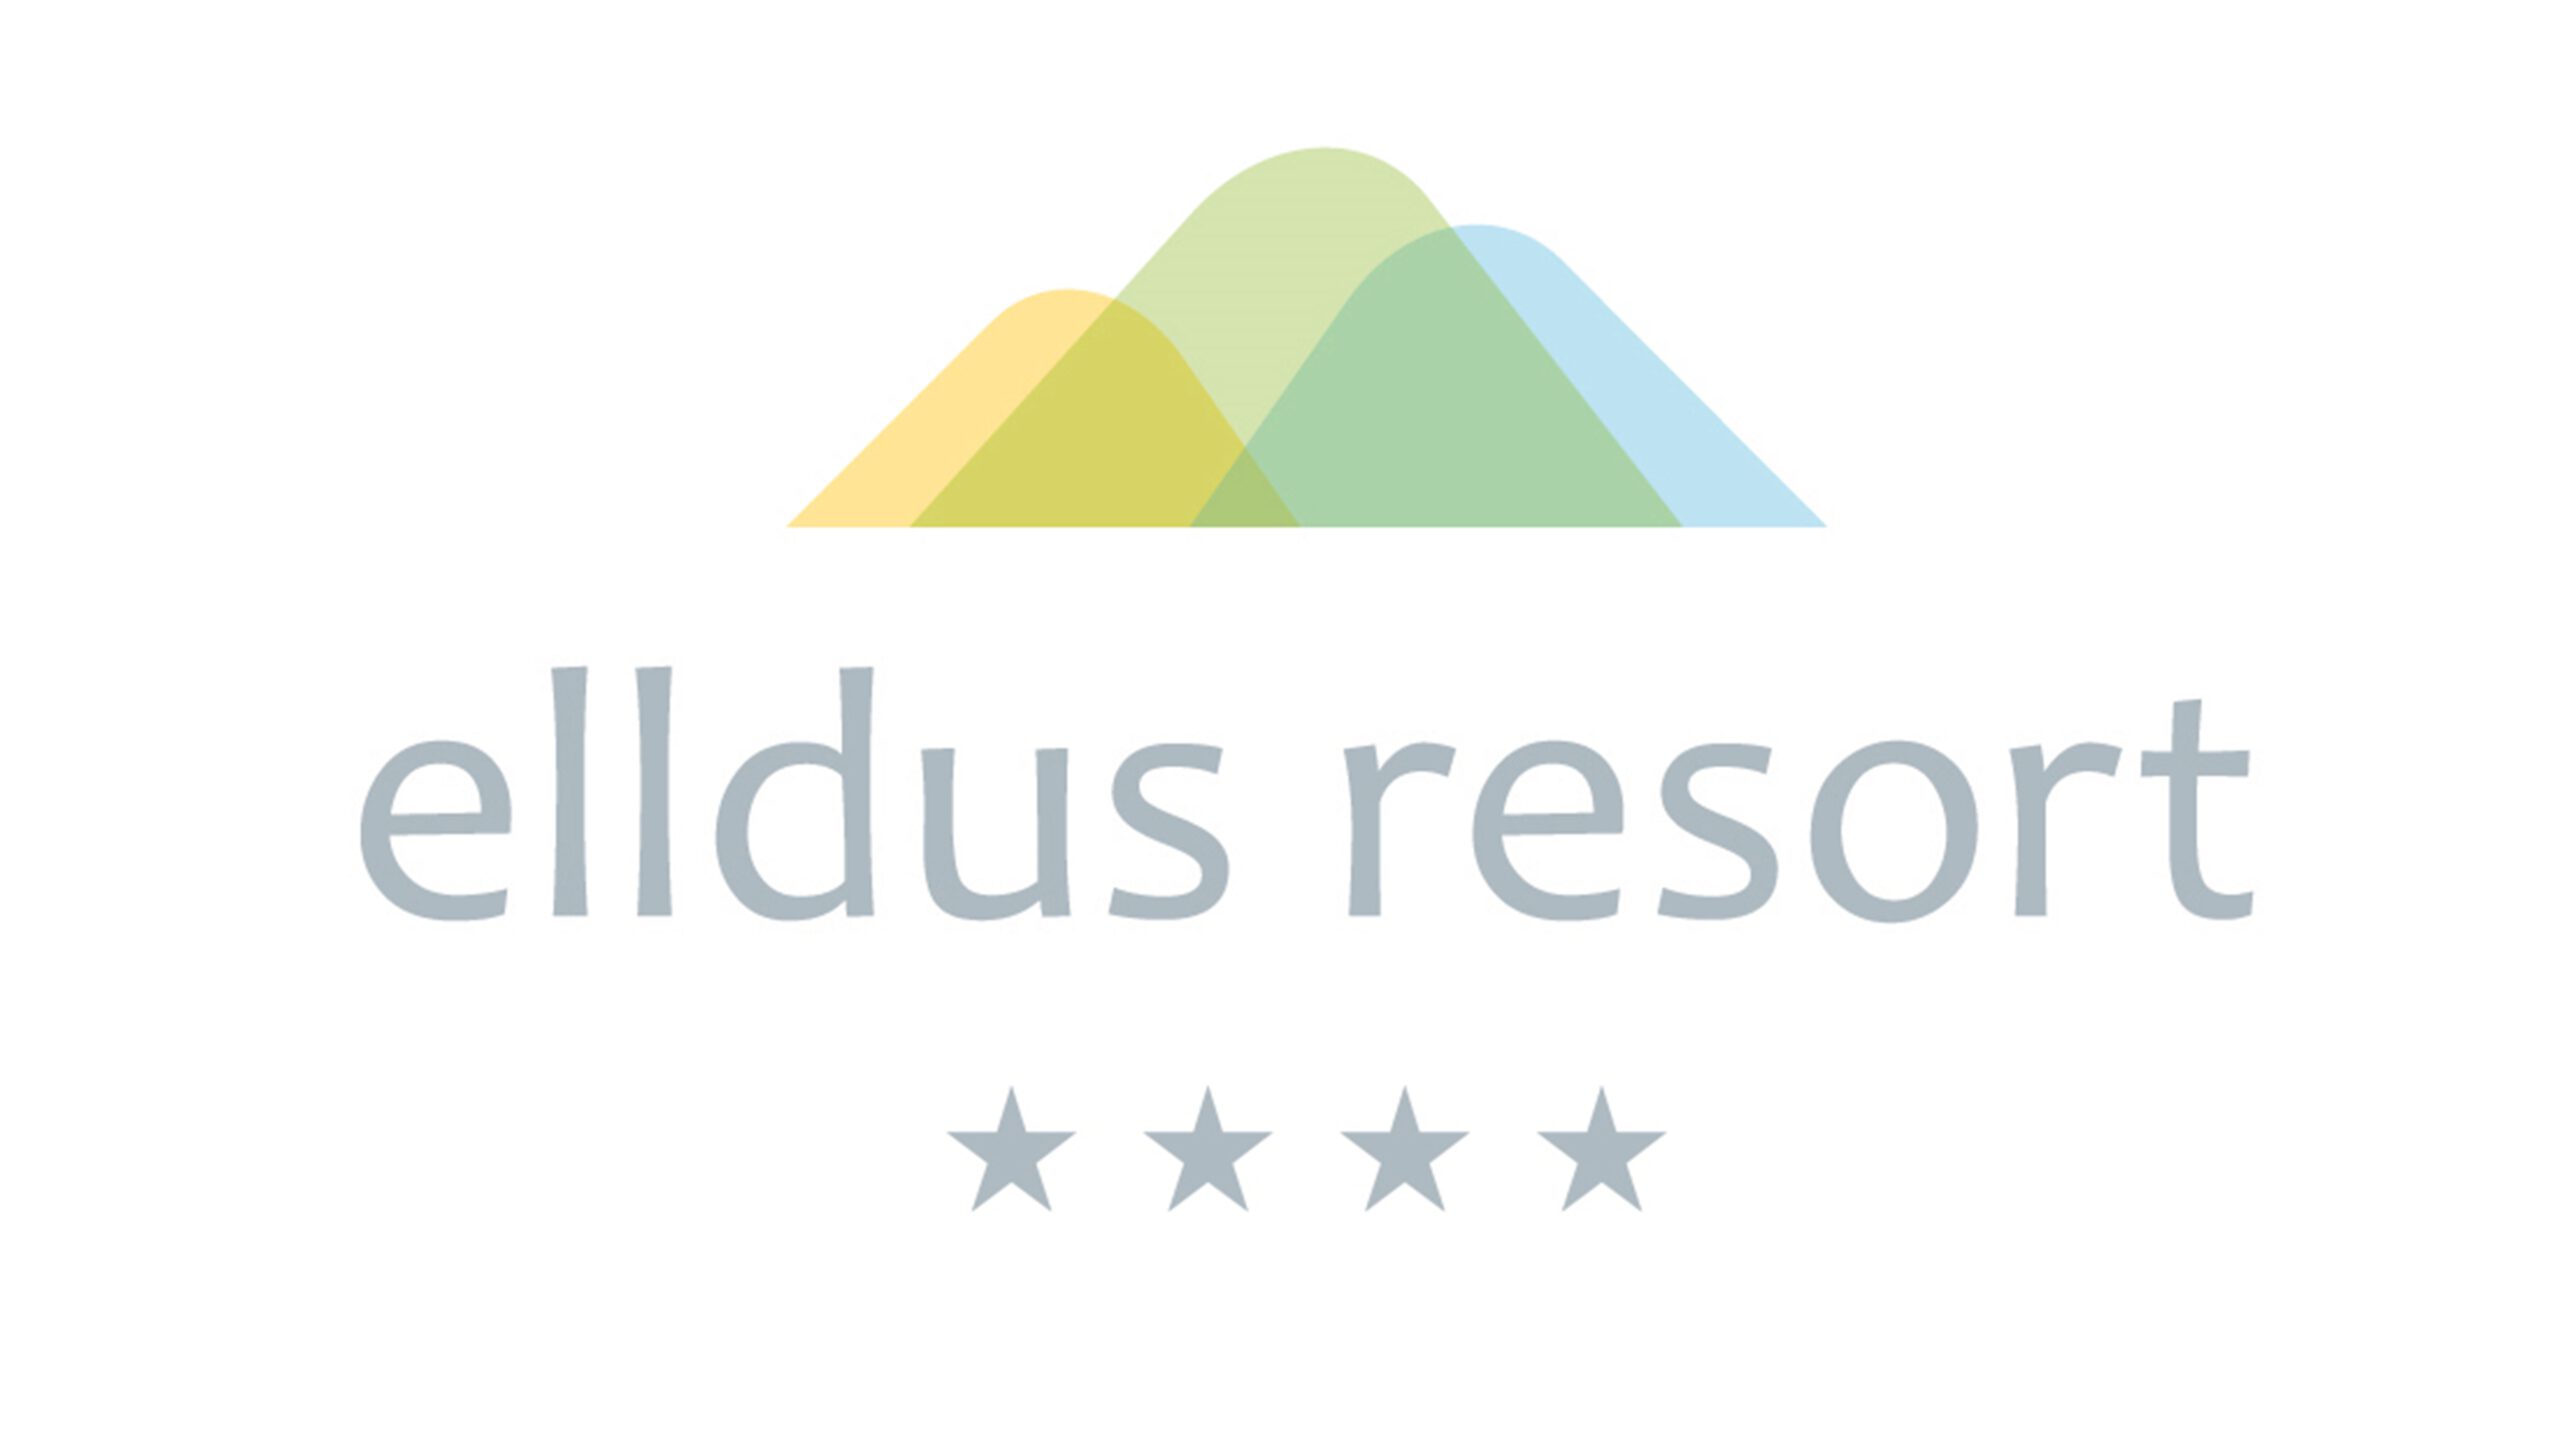 Elldus Resort